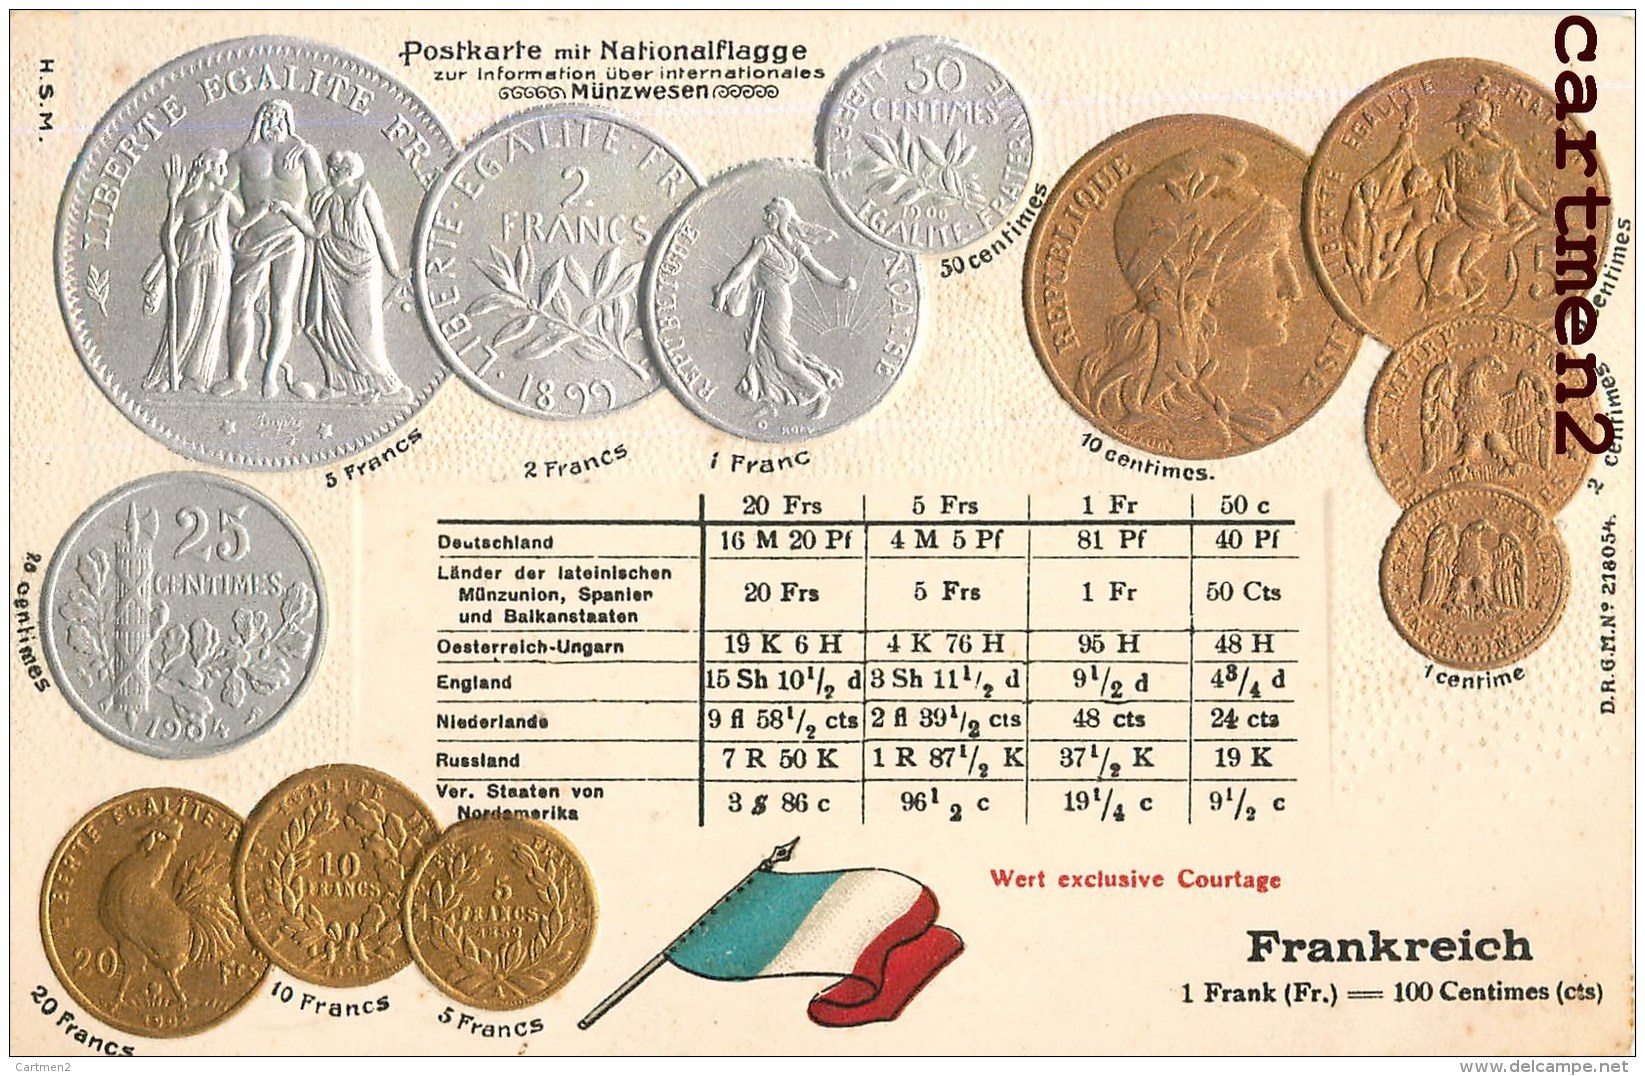 POSTKARTE MIT NATIONALFLAGGE LE FRANC FRANCAIS PIECEDE 5 FRANC EN ARGENT BOURSE GAUFREE EMBOSSED PATRIOTISME - Monete (rappresentazioni)